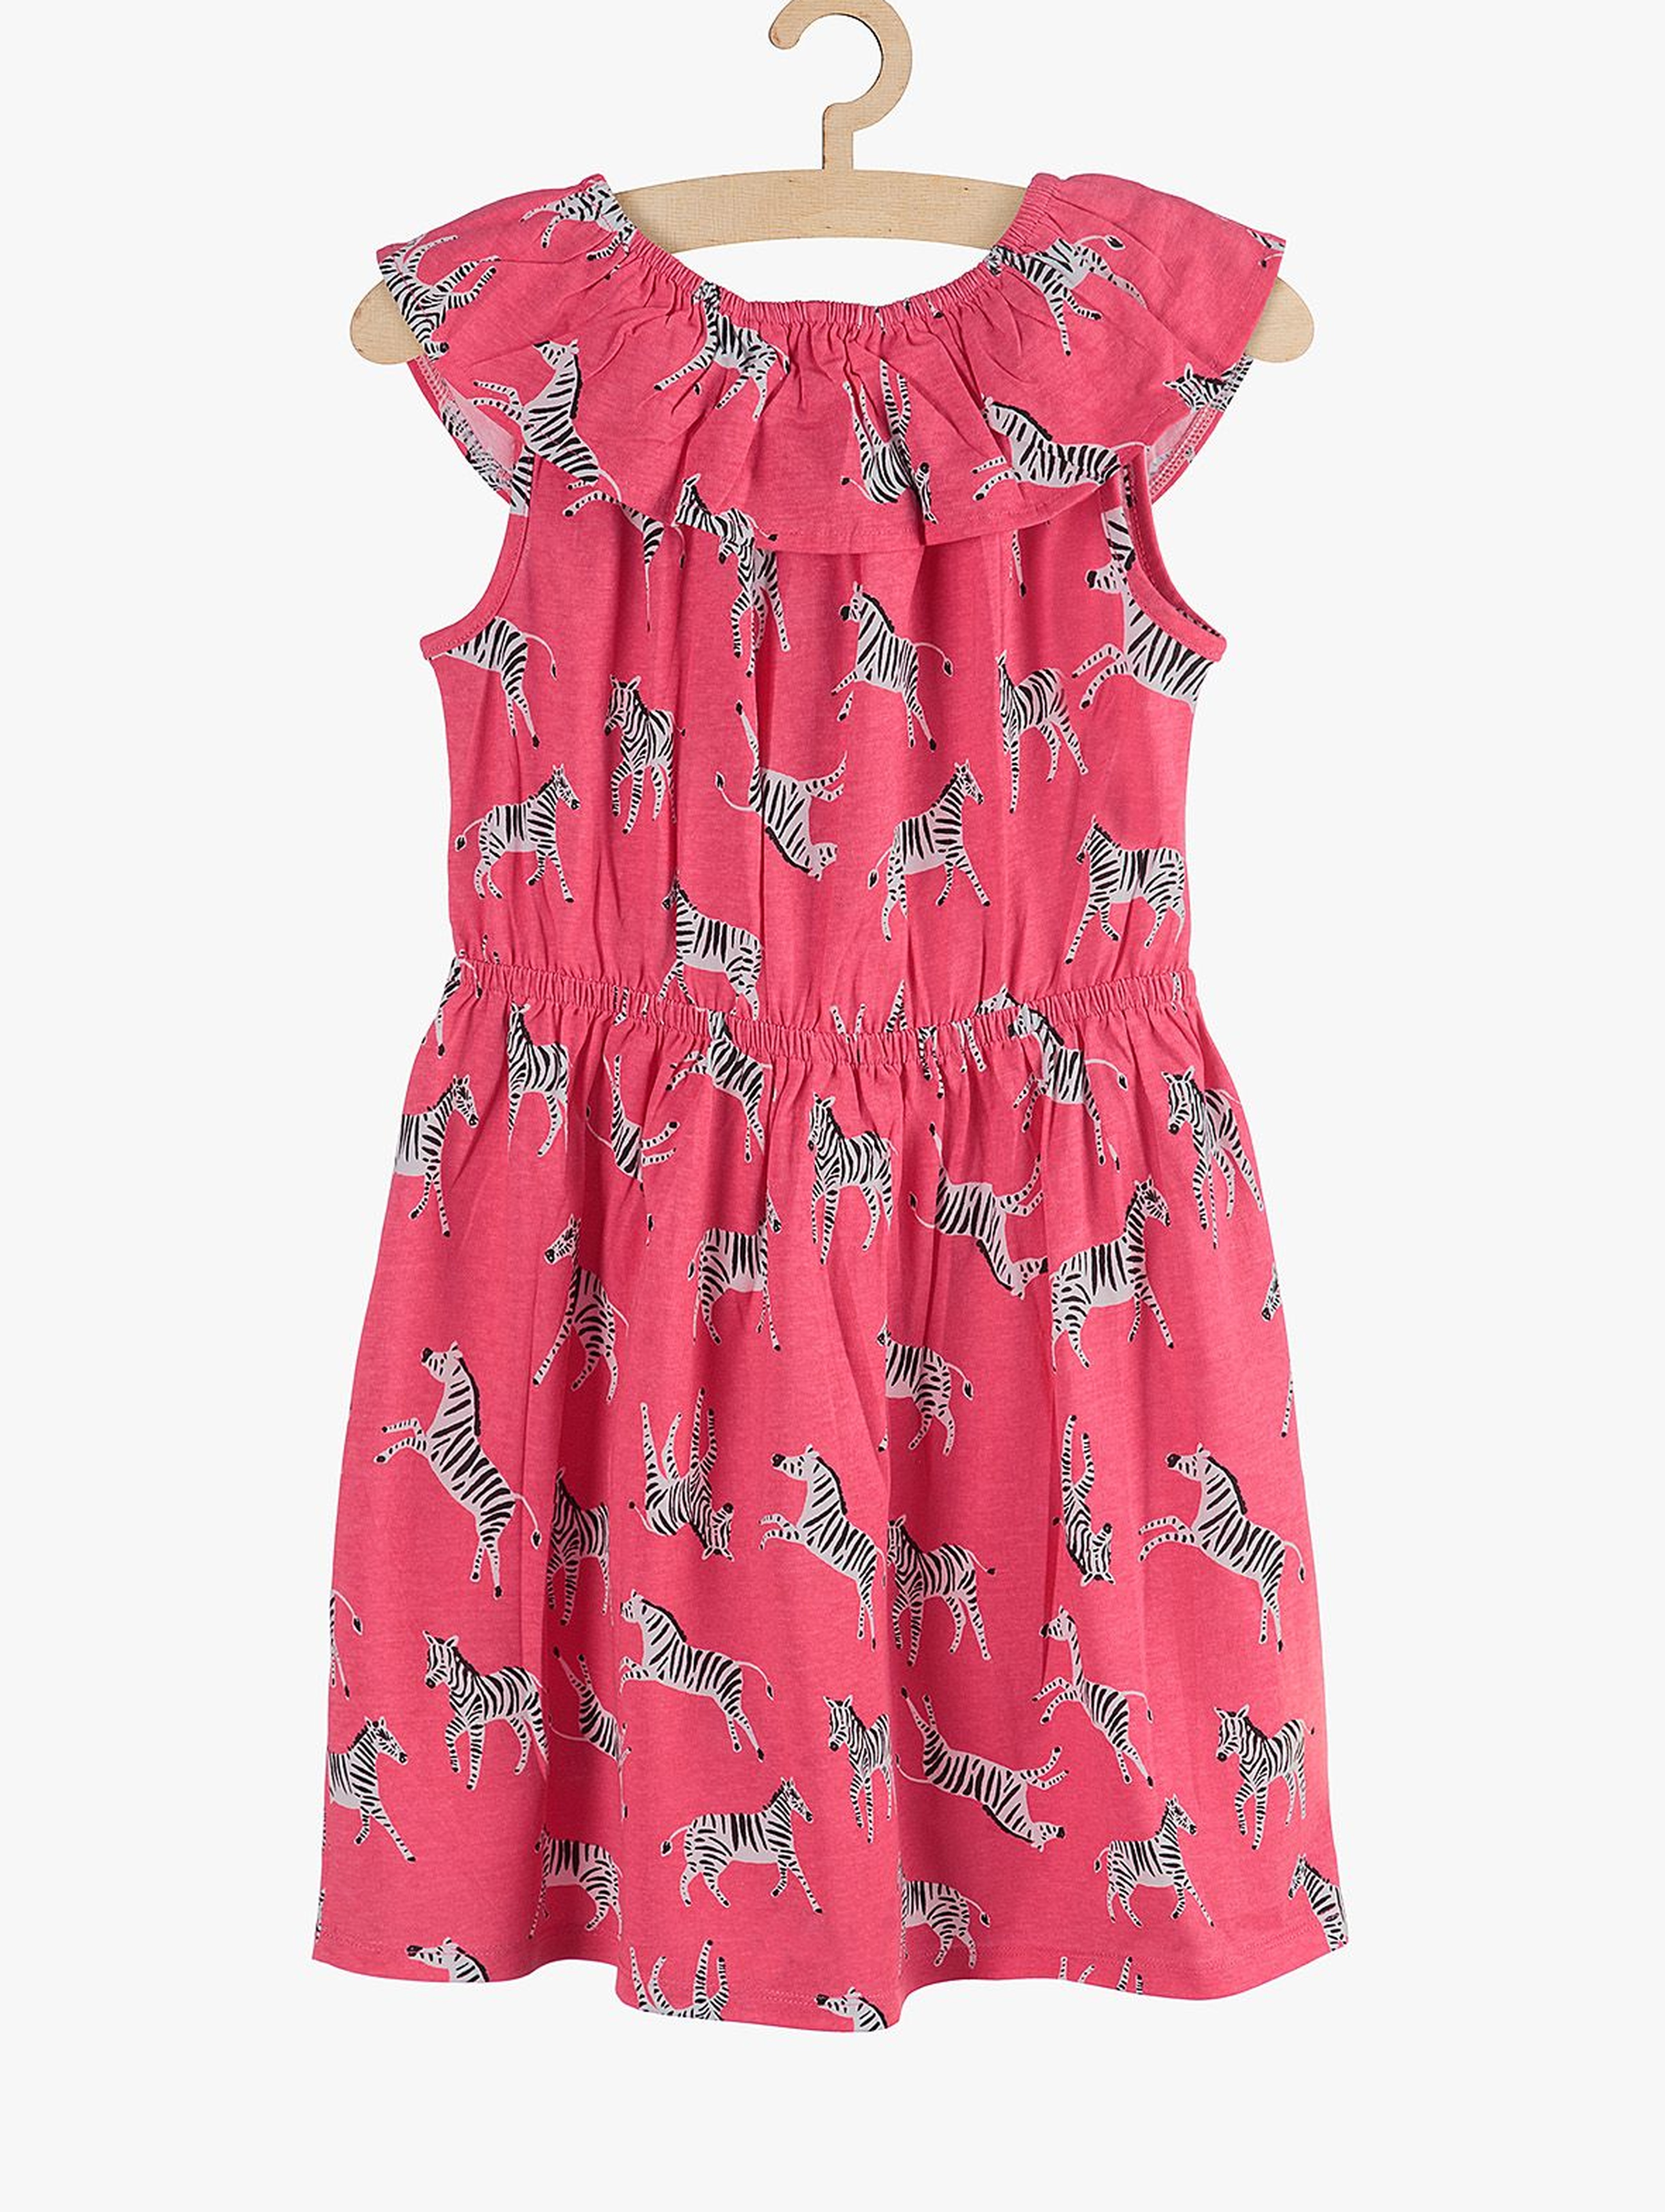 Sukienka dziewczęca różowa- Safari - Zebry